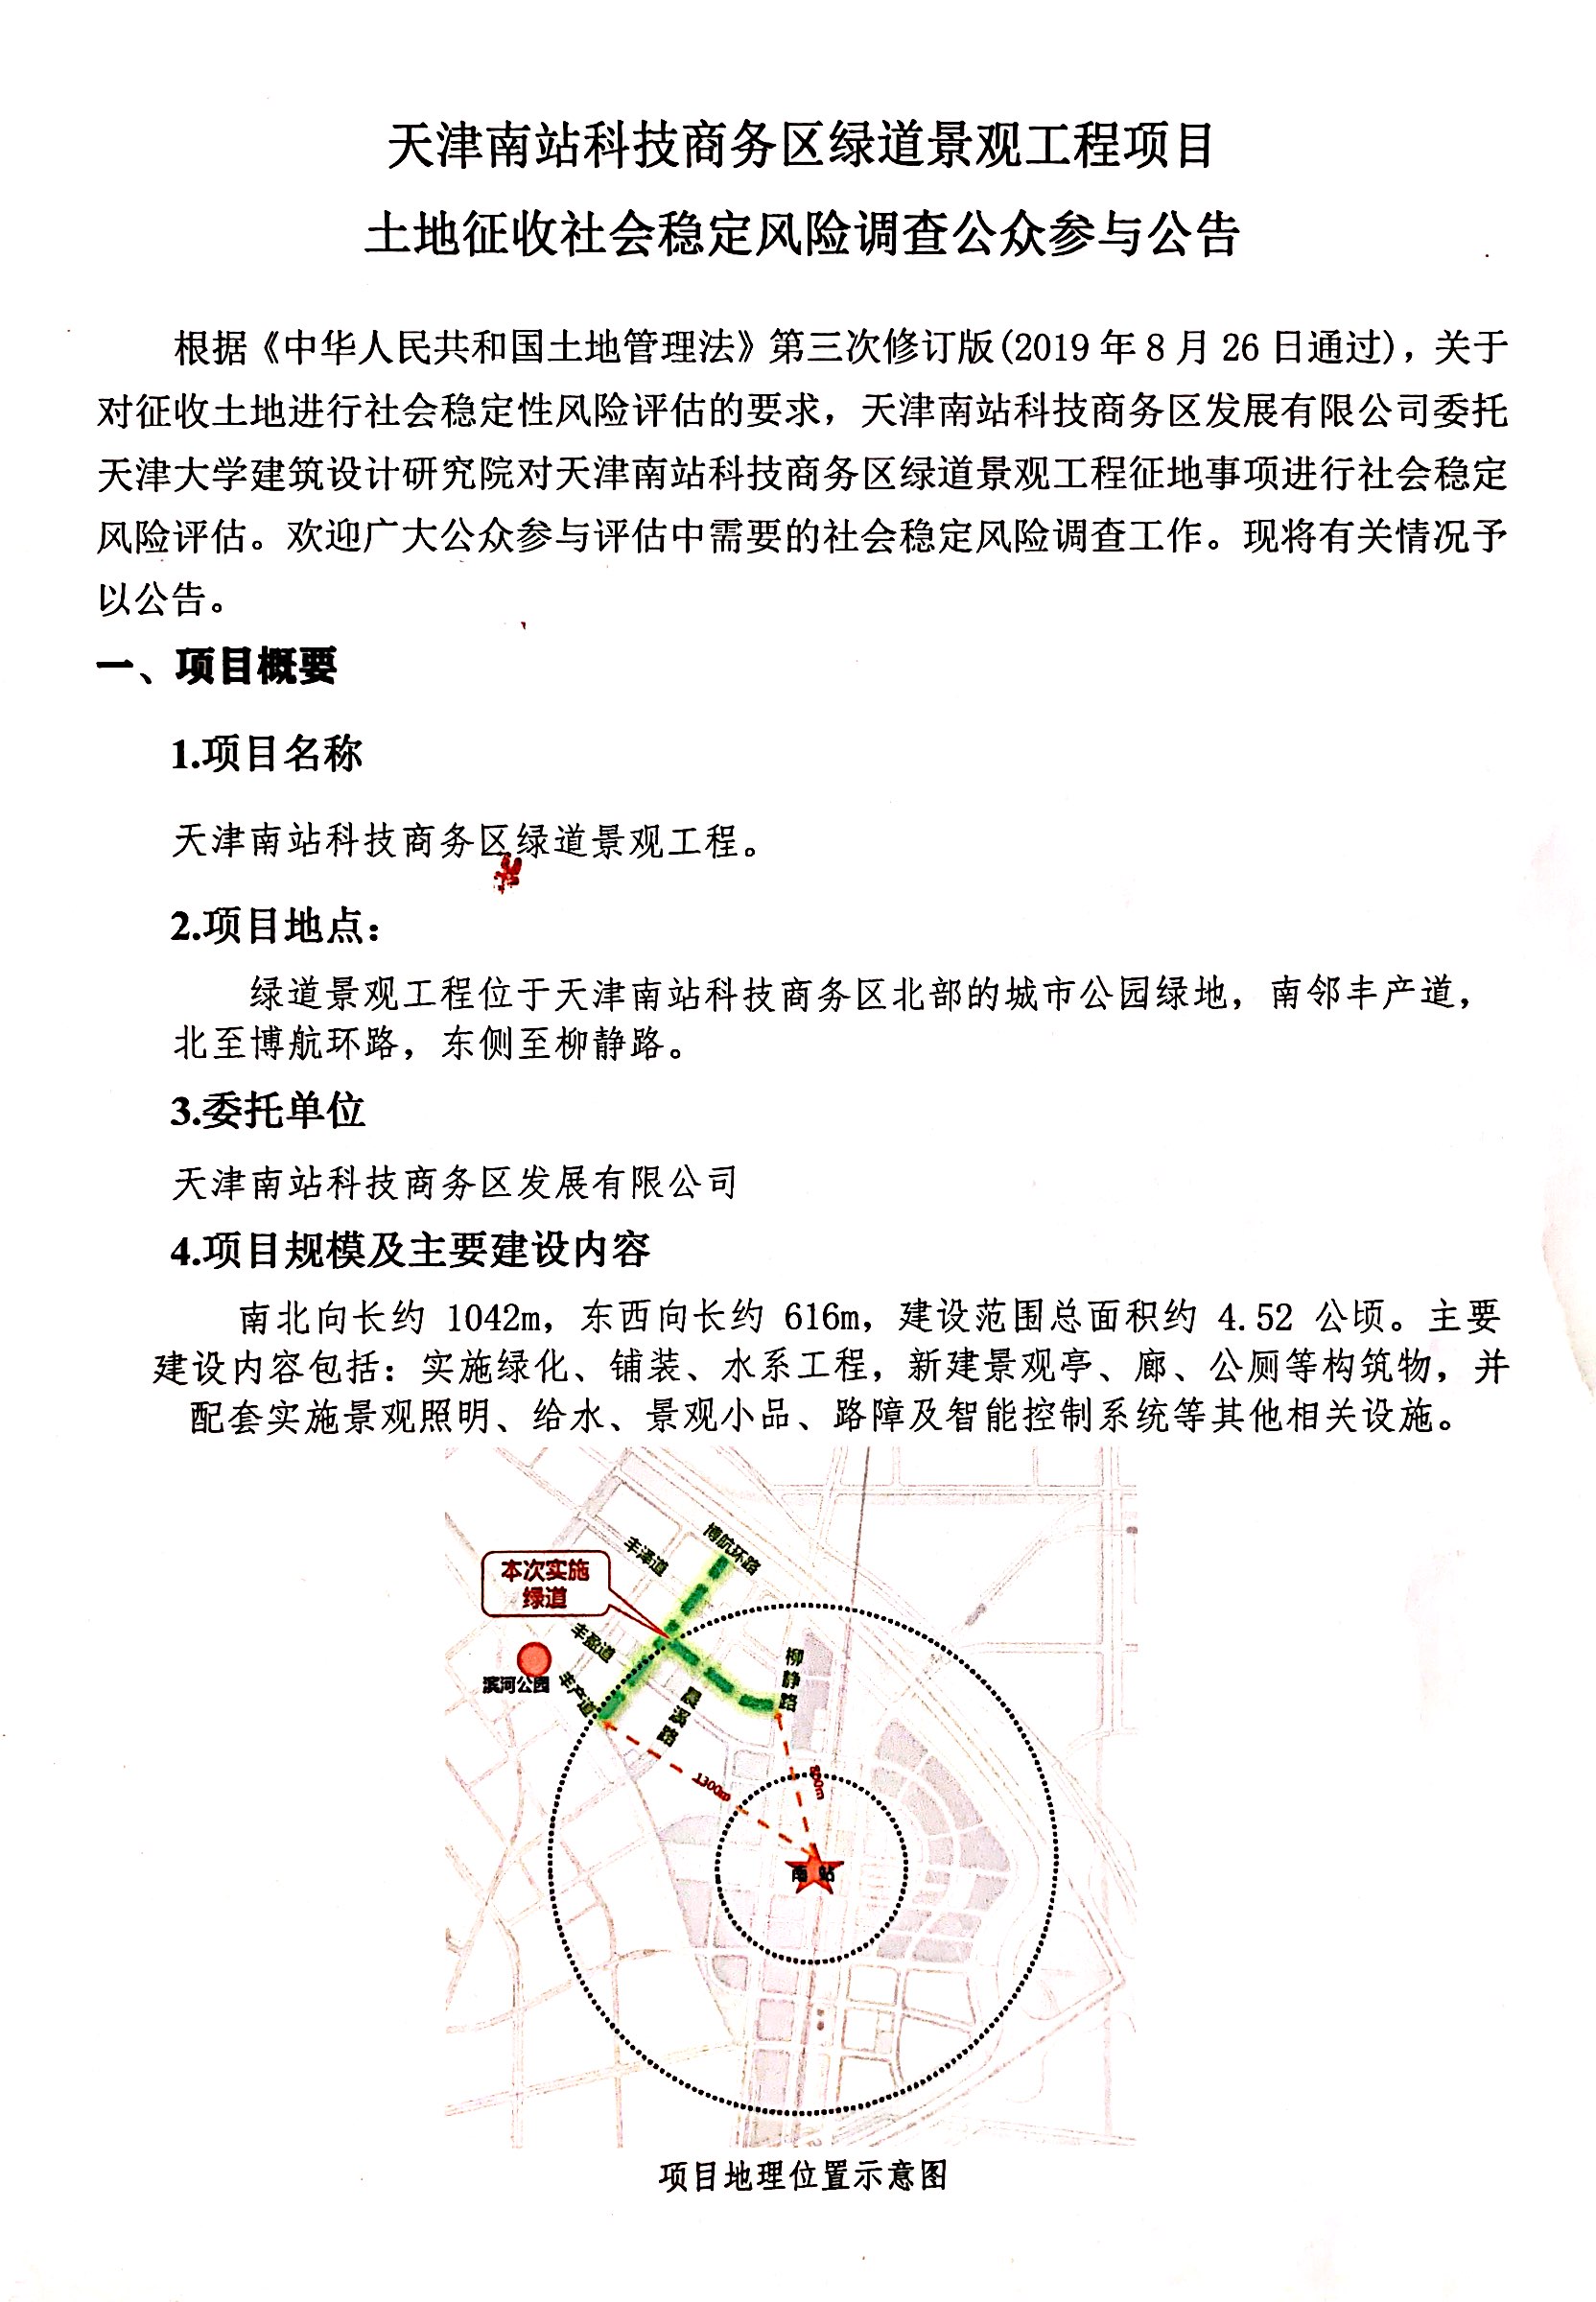 天津南站科技商务区绿道景观工程项目土地征收1.jpeg